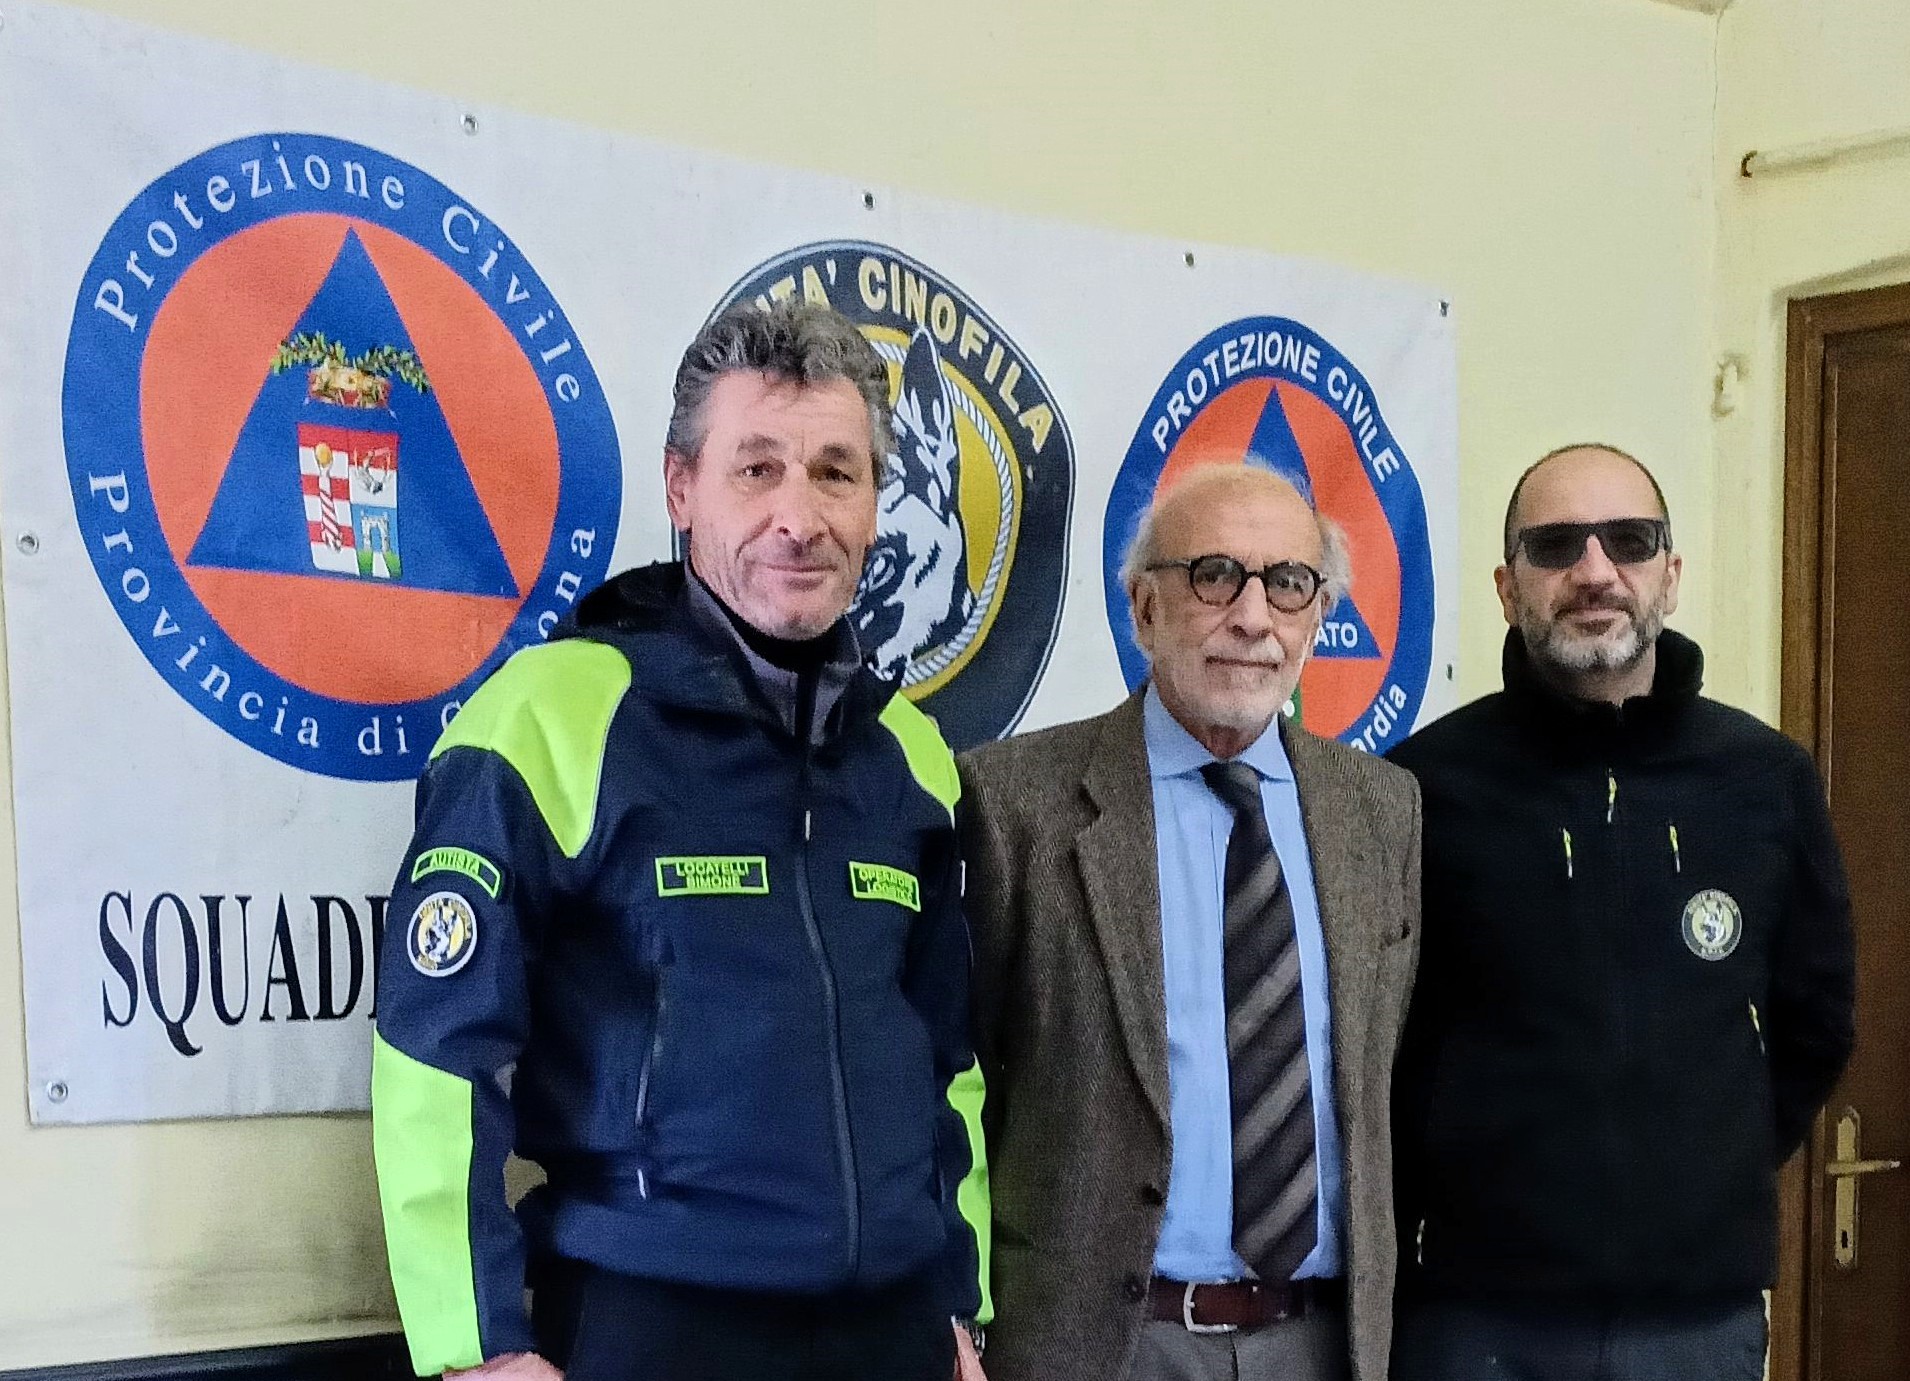 Casale Cremasco Vidolasco – Dall’inizio di quest’anno il comune si è convenzionato con un nuovo gruppo di protezione civile: la Soic